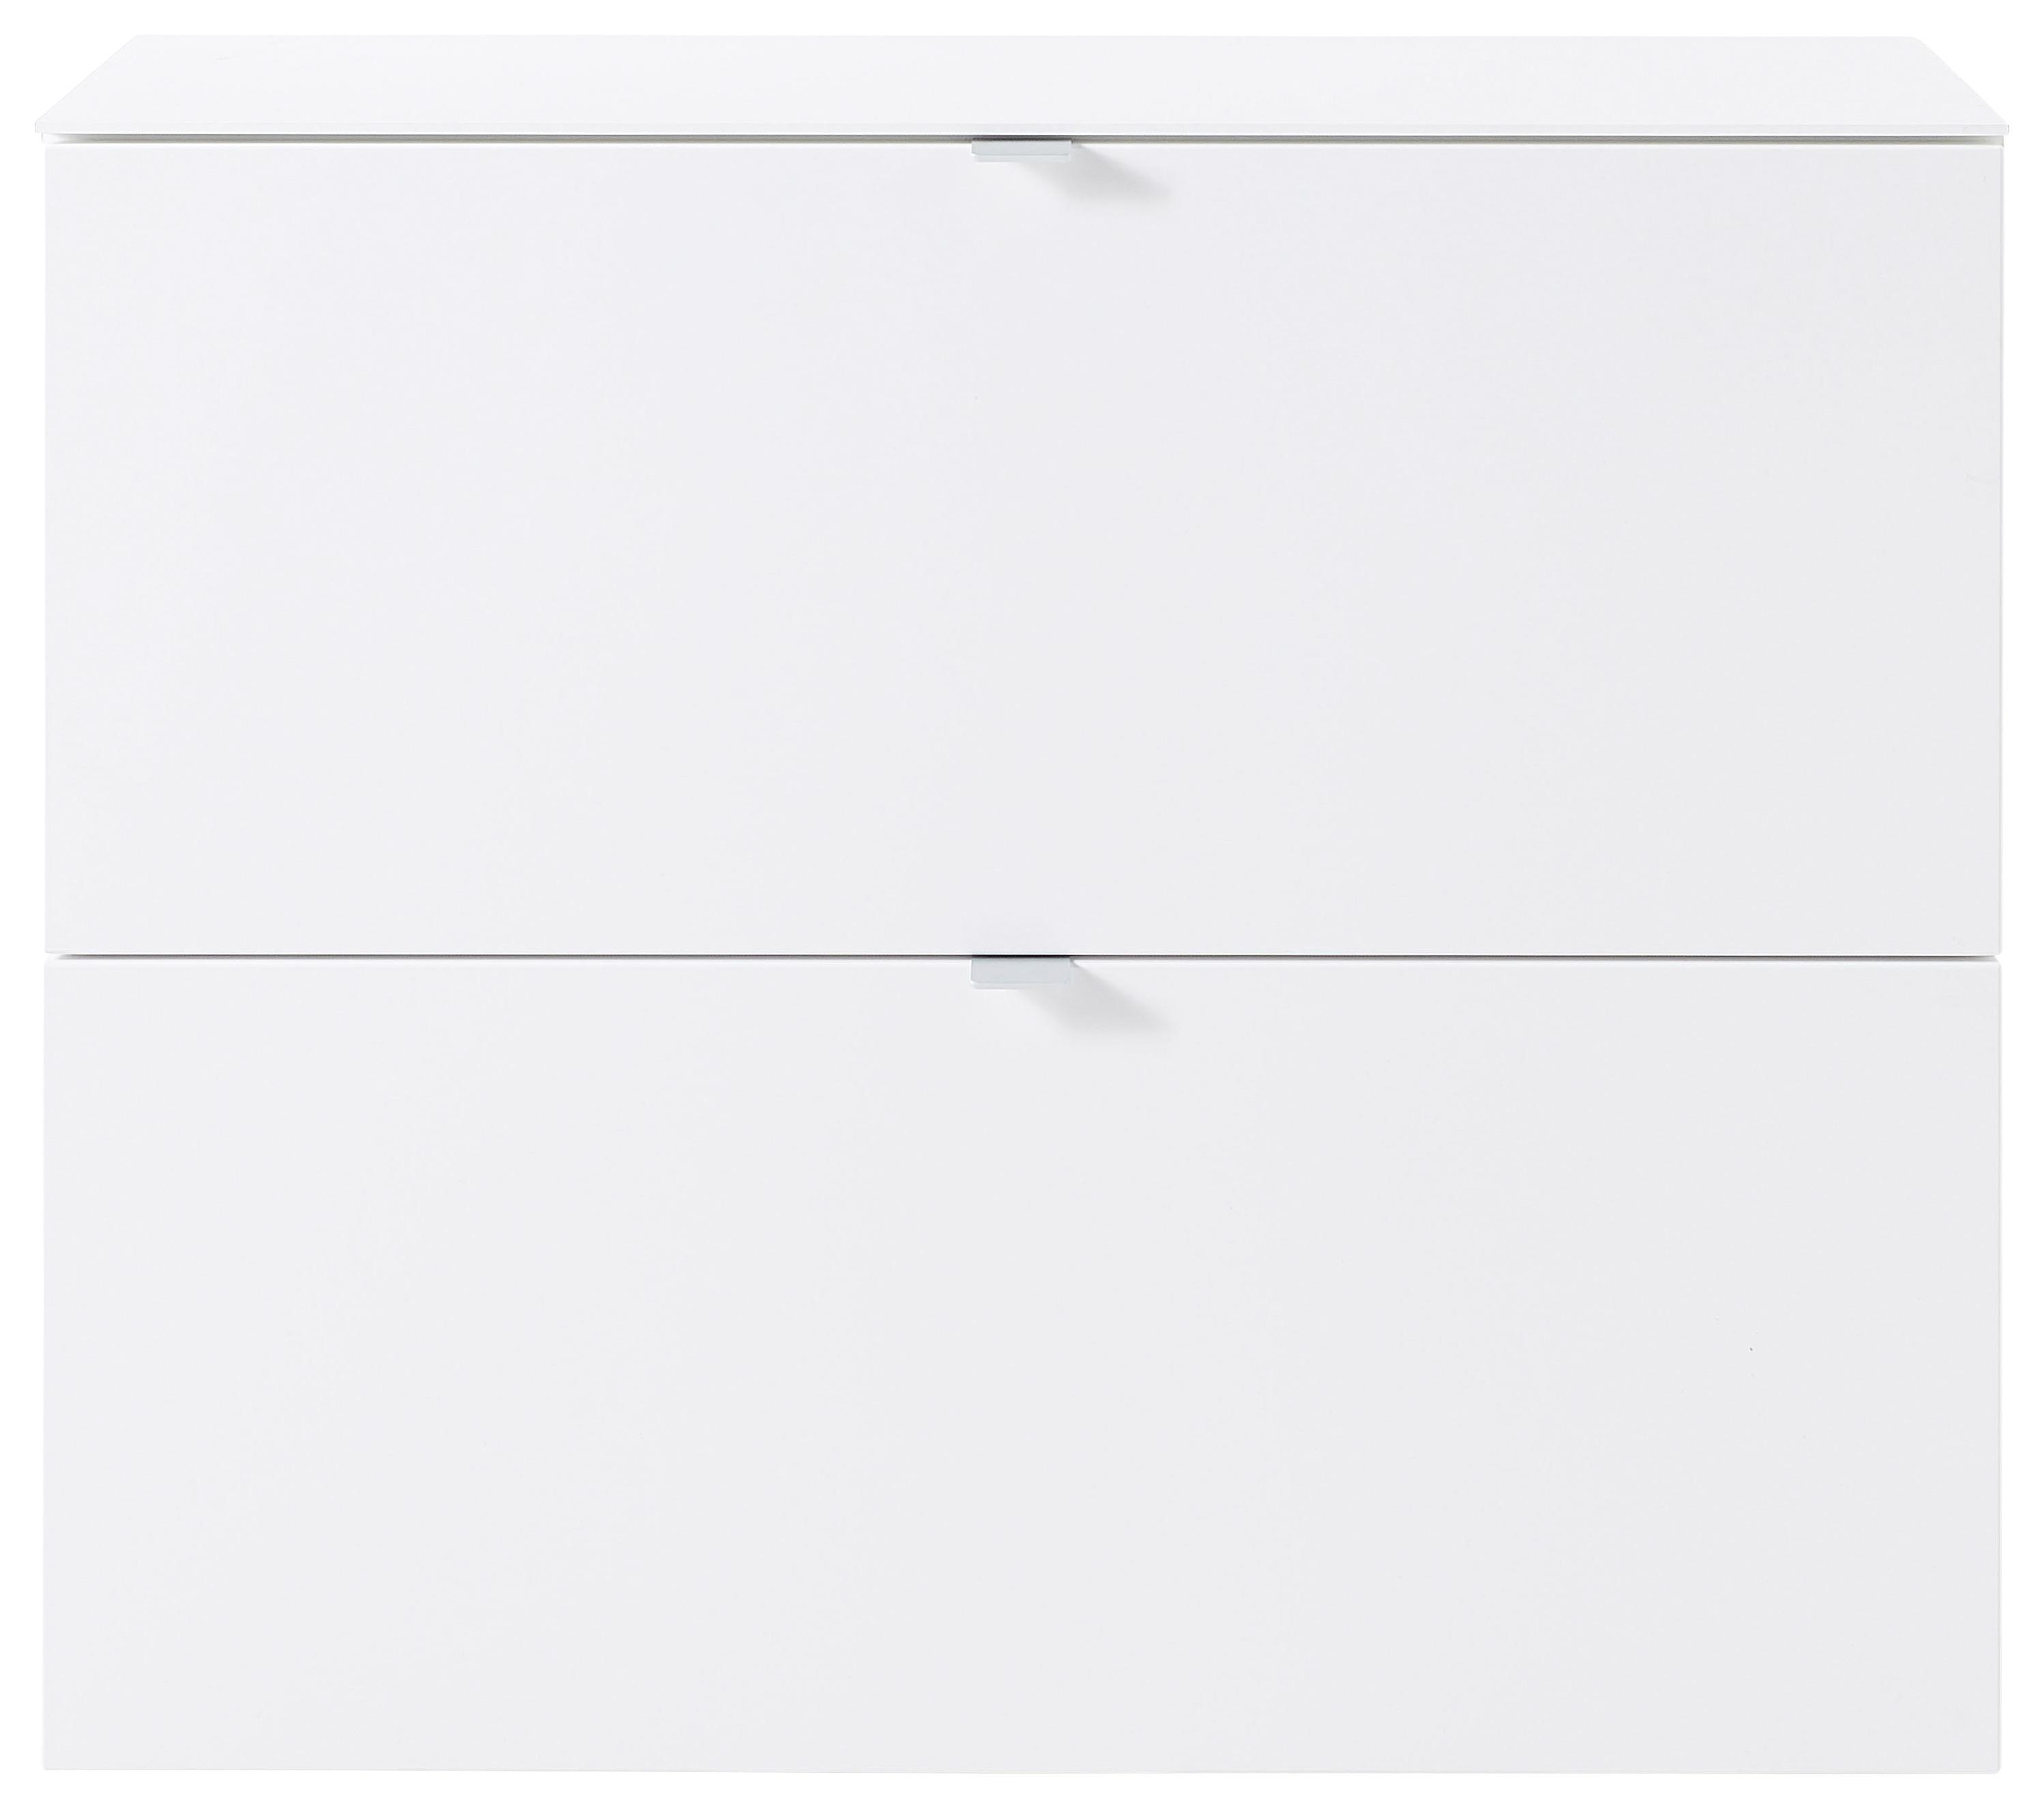 Schuhschrank in Weiß - Silberfarben/Weiß, MODERN, Holzwerkstoff/Metall (100/84/37cm) - Modern Living